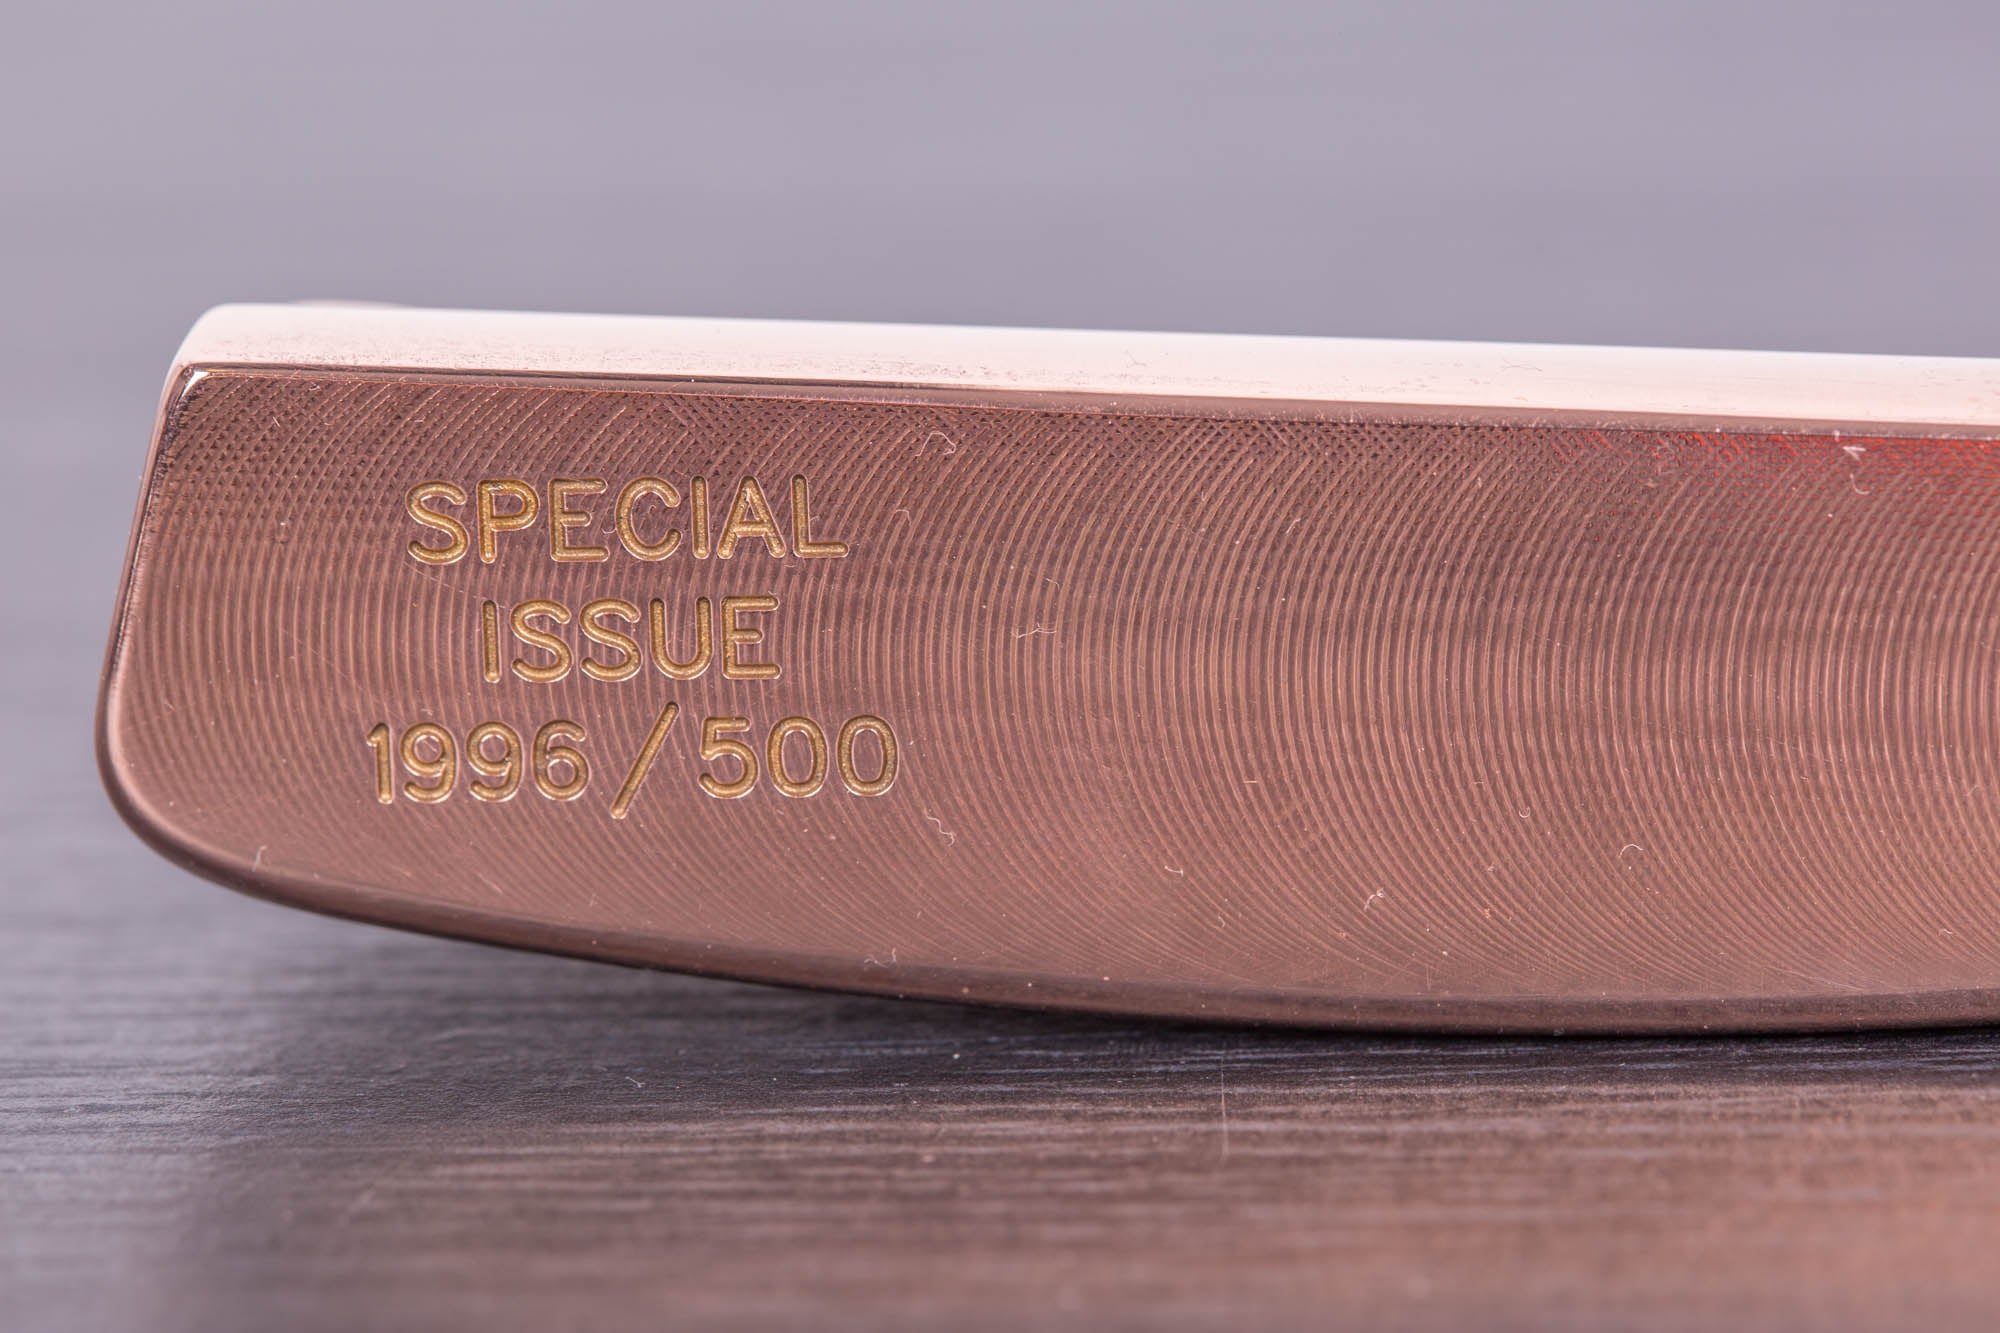 1996 500 Copper Laguna